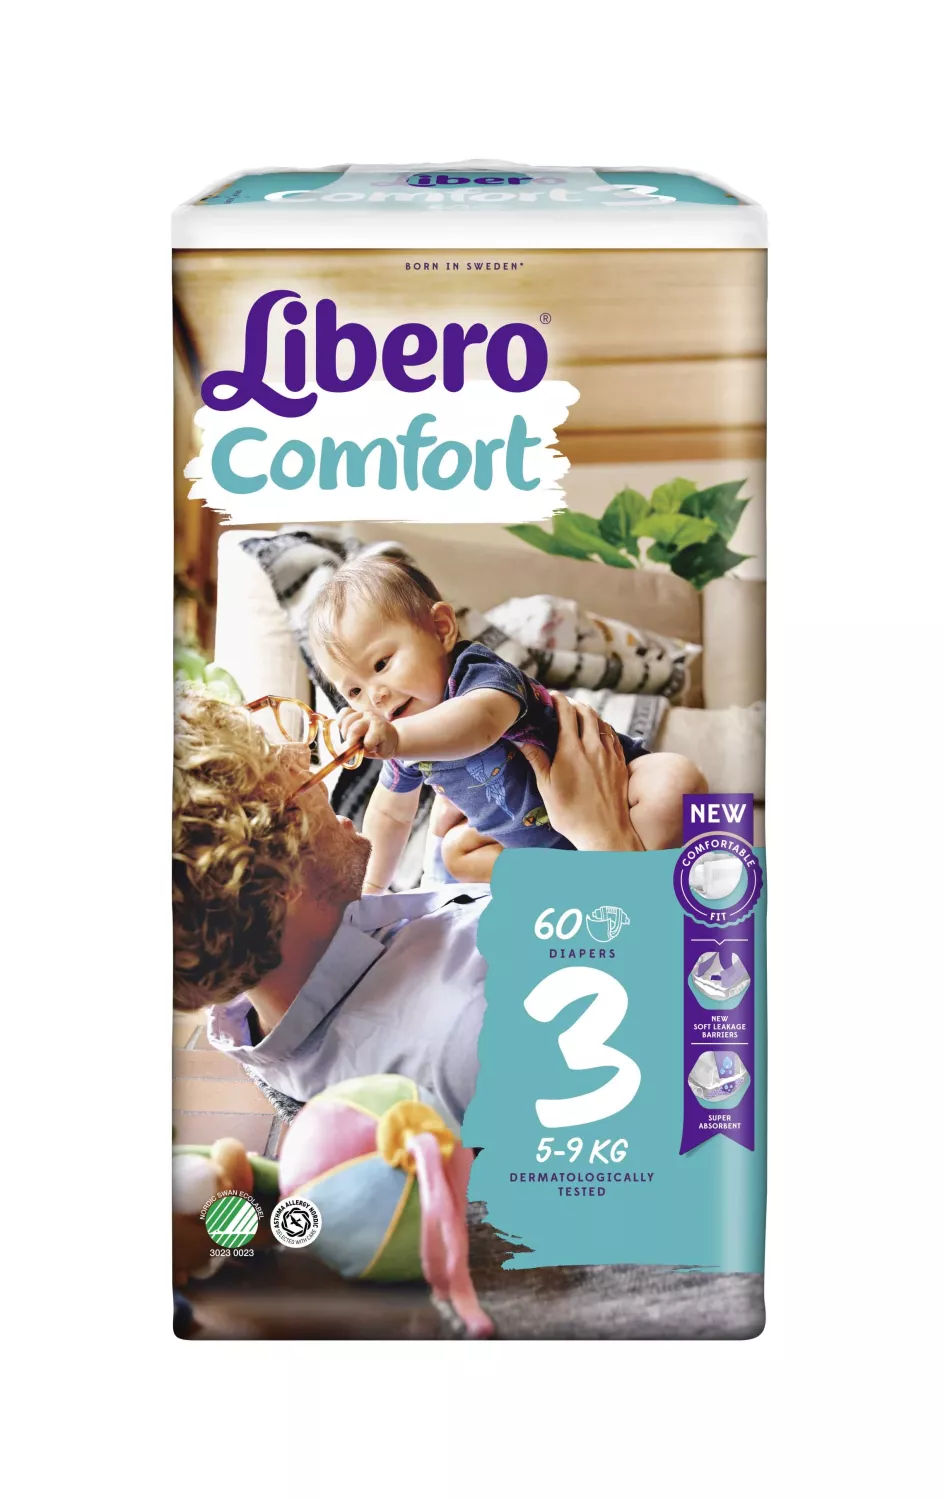 long Verbeteren Conclusie Libero Comfort 3 (5-9kg) - Goed thuiszorgwinkel